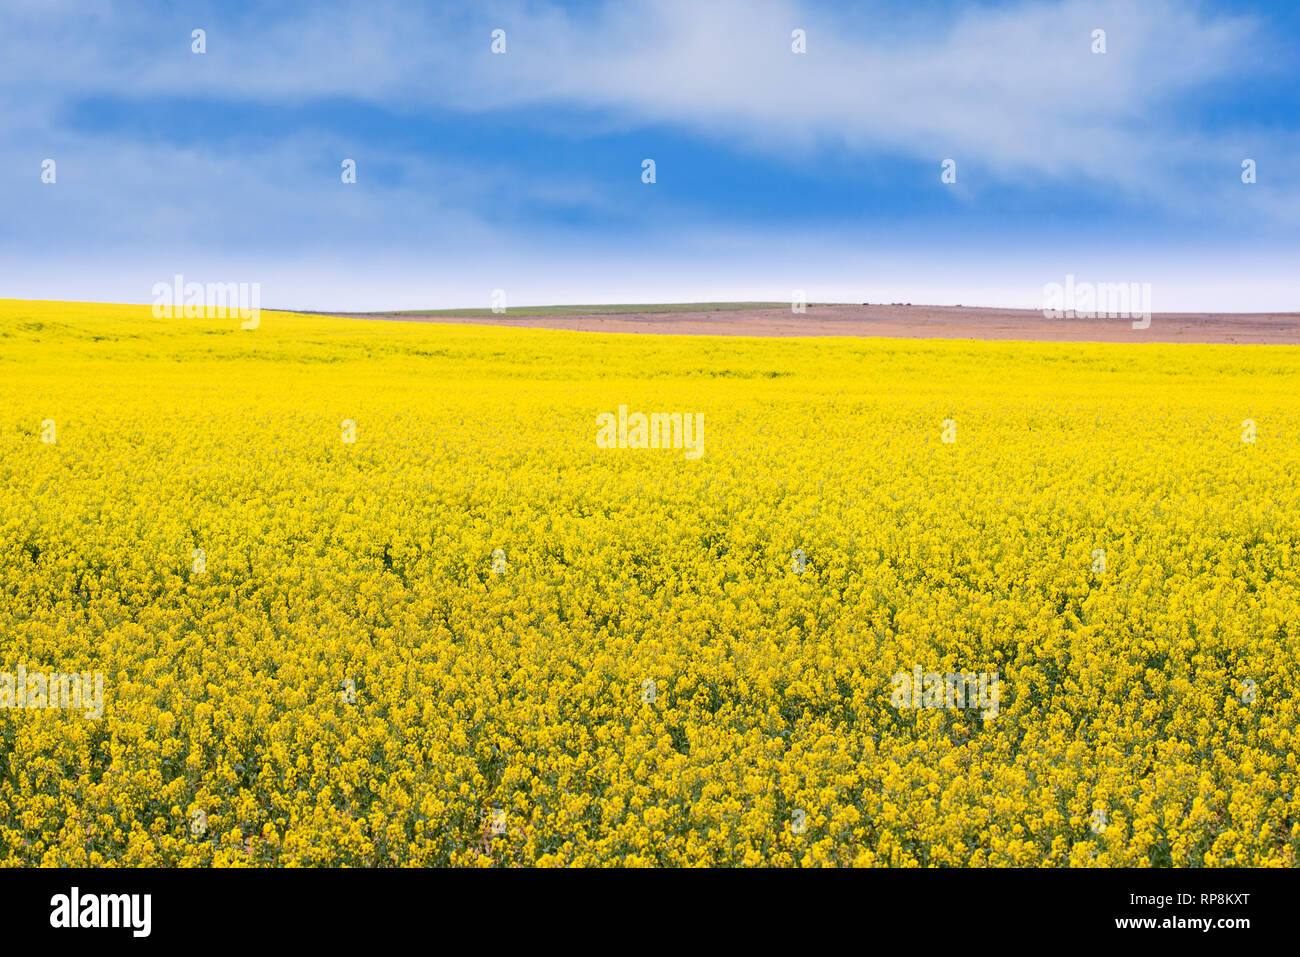 La récolte de canola jaune au champ dans les régions rurales de l'Australie du Sud, Australie Banque D'Images